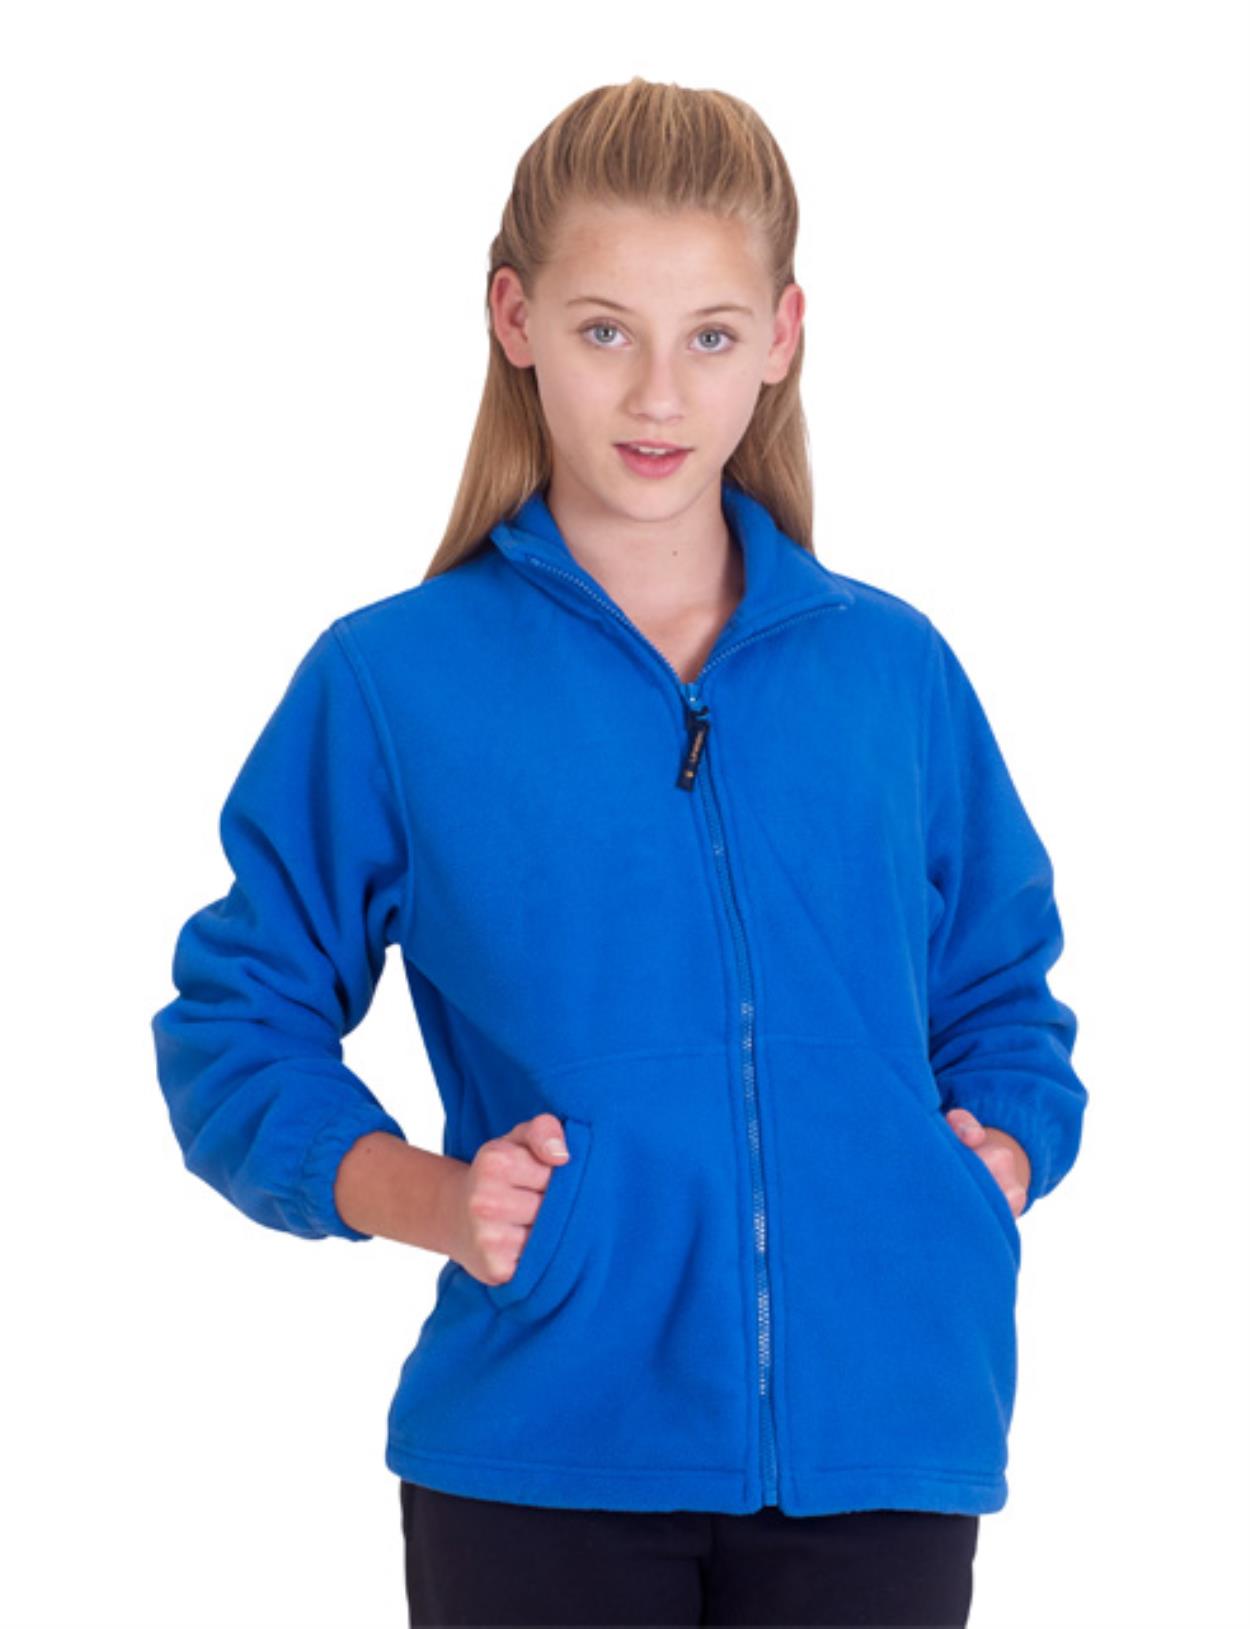 UC603 Children's Full Zip Fleece Image 1